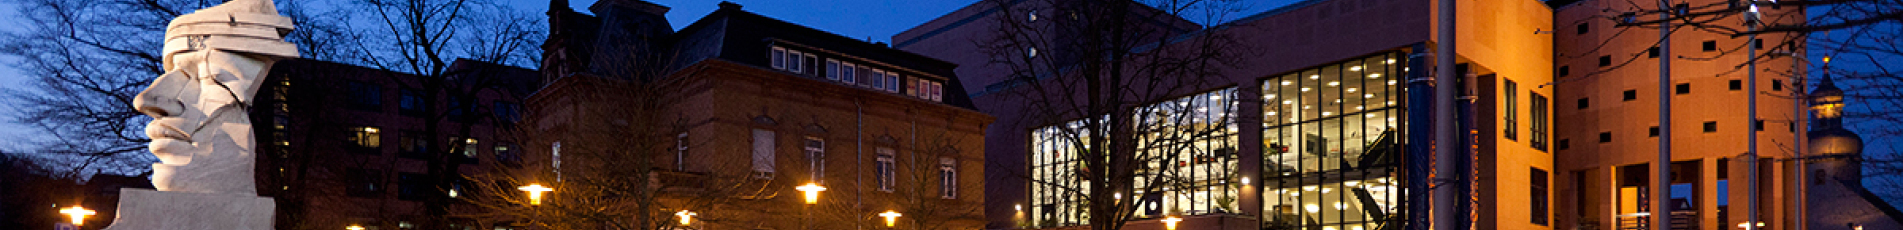 Das Pfalztheater bei Dämmerung vom Willy-Brand-Platz aus.Gut kann man am rechten Bildrand die Rotunde erkennen.